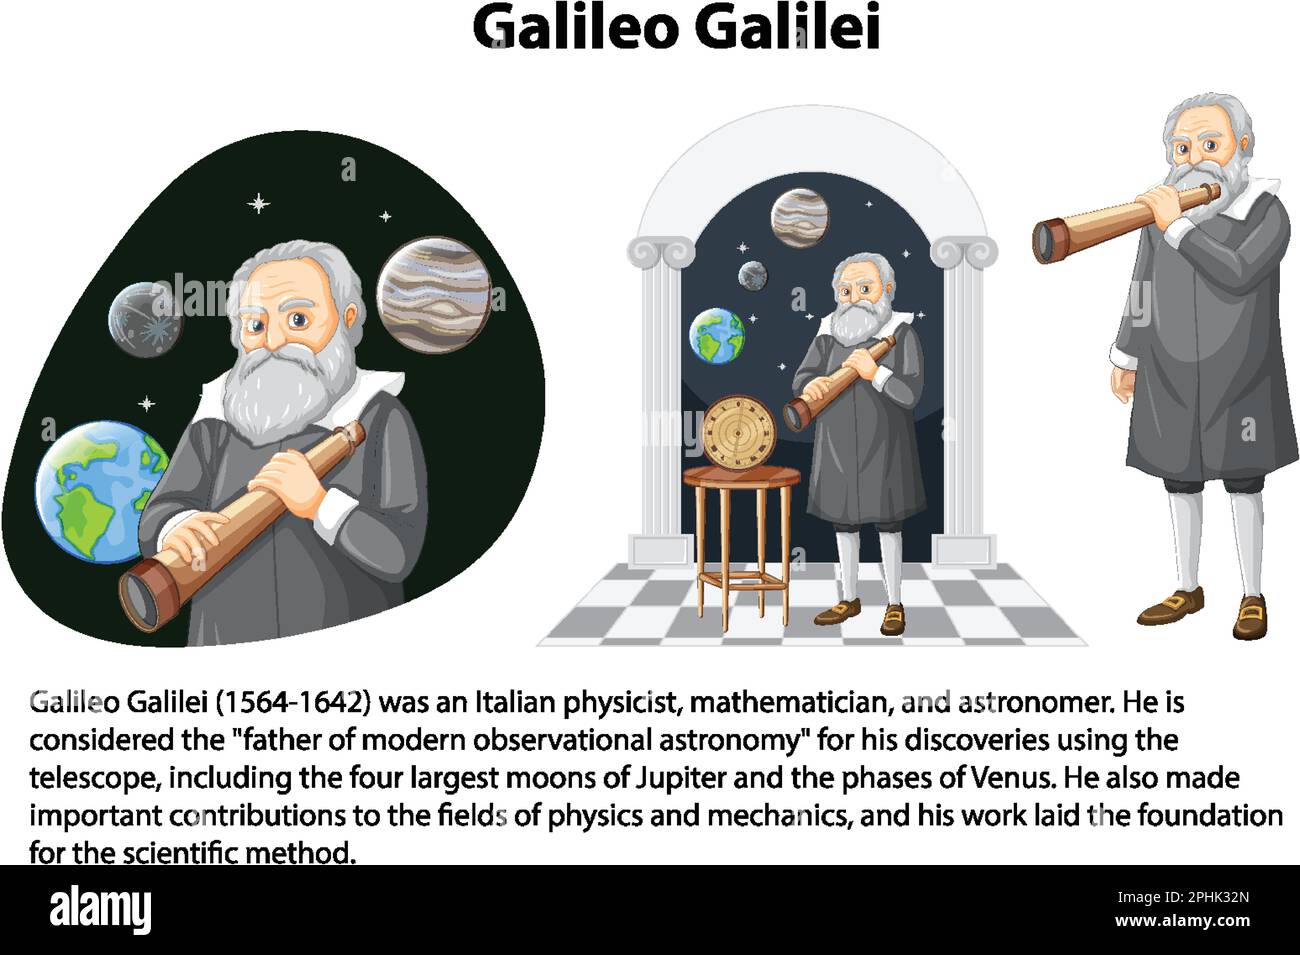 Biografia informativa dell'illustrazione di Galileo Galilei Illustrazione Vettoriale